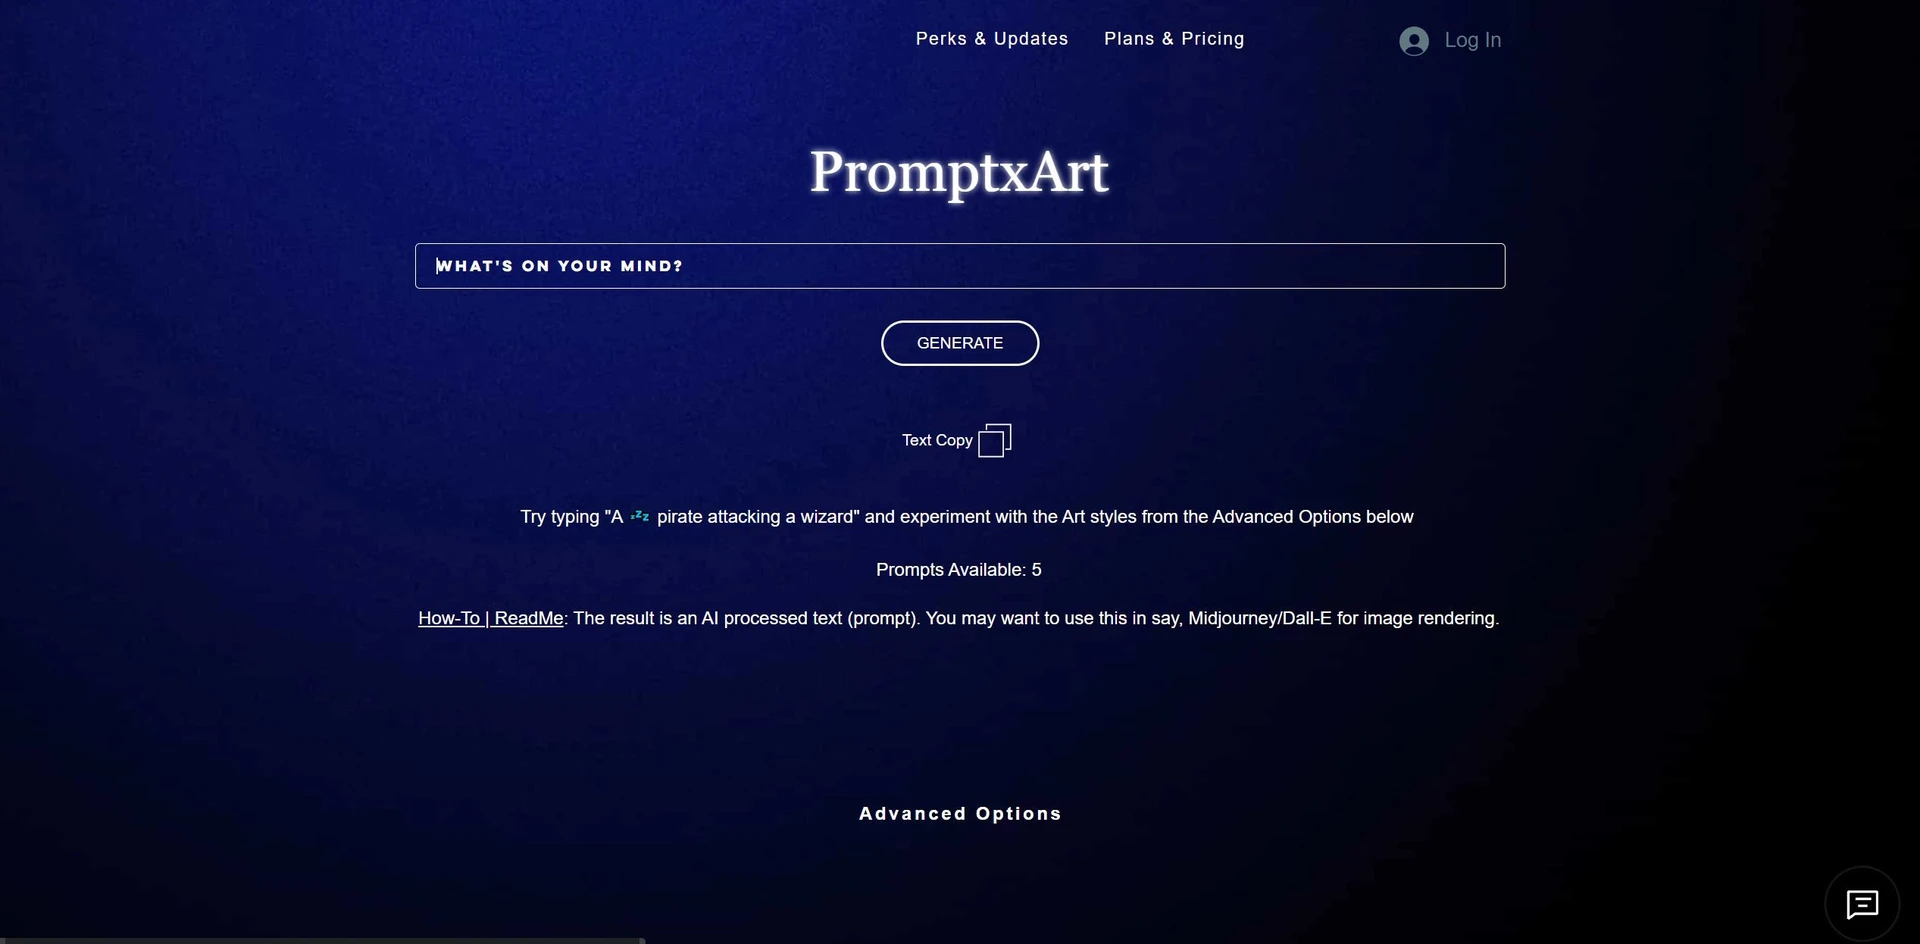 PromptxArtwebsite picture